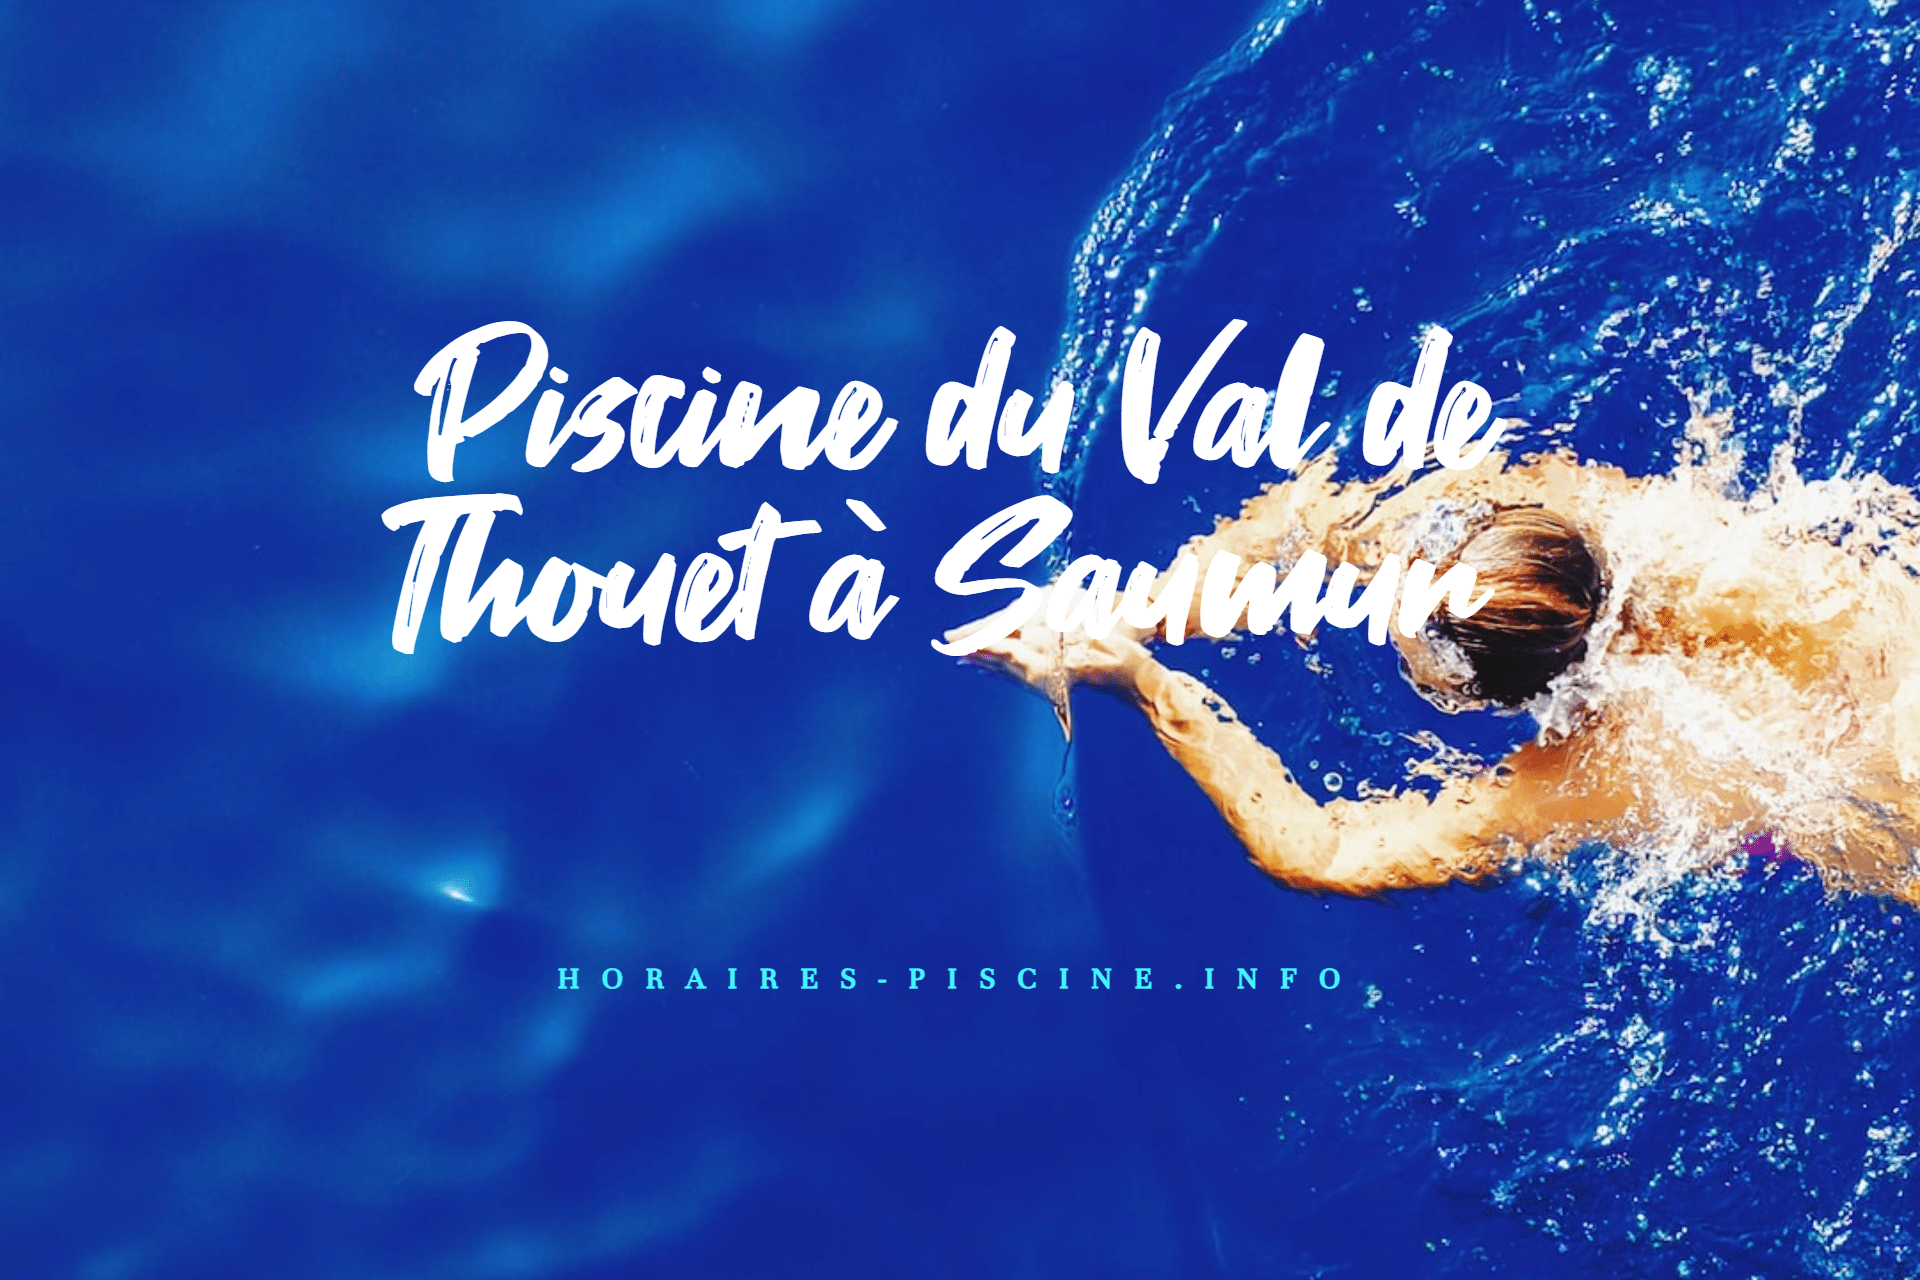 Piscine du Val de Thouet à Saumur